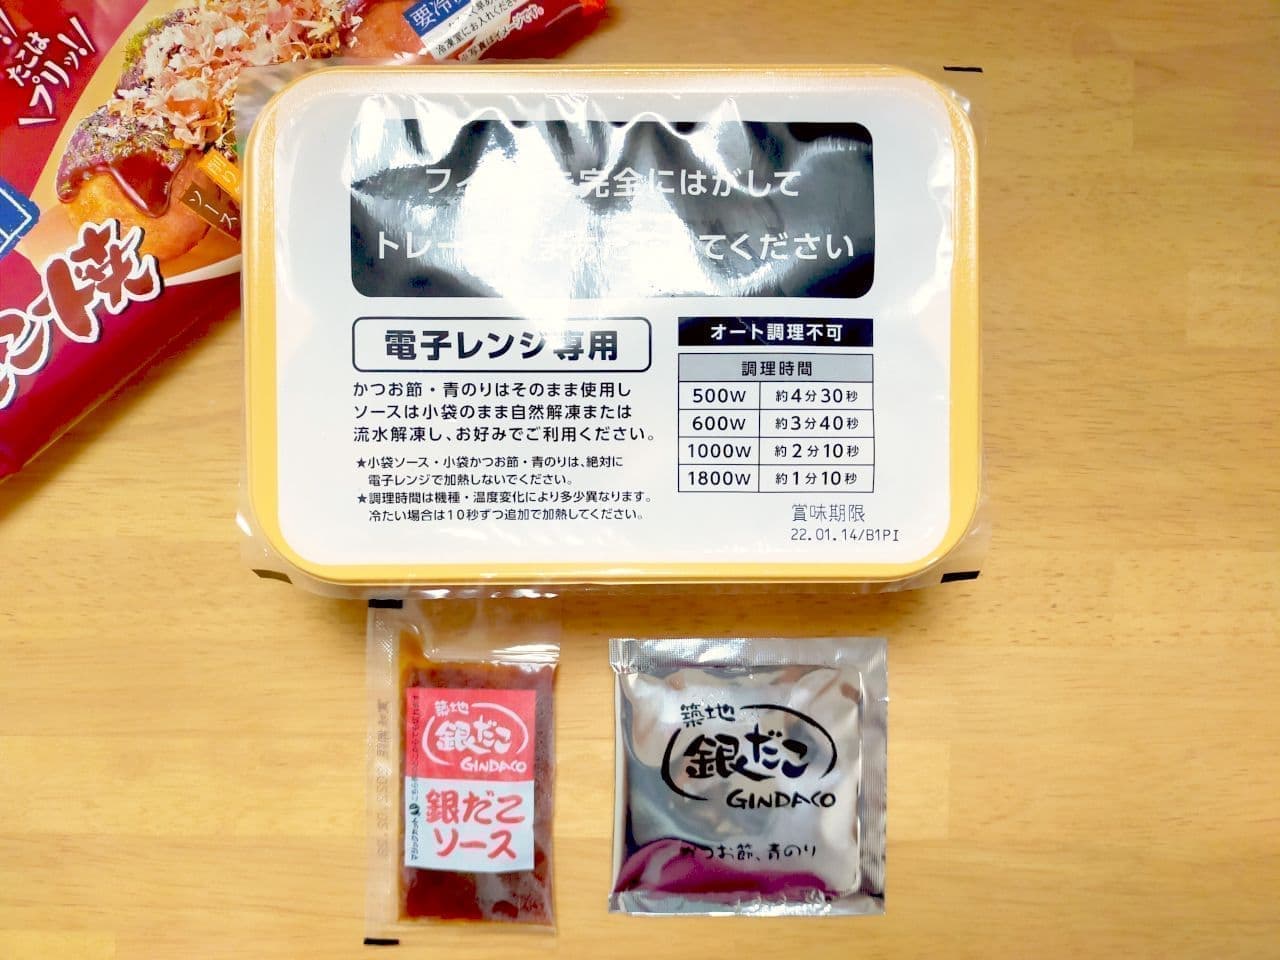 7-ELEVEN Premium Frozen Takoyaki Comparison